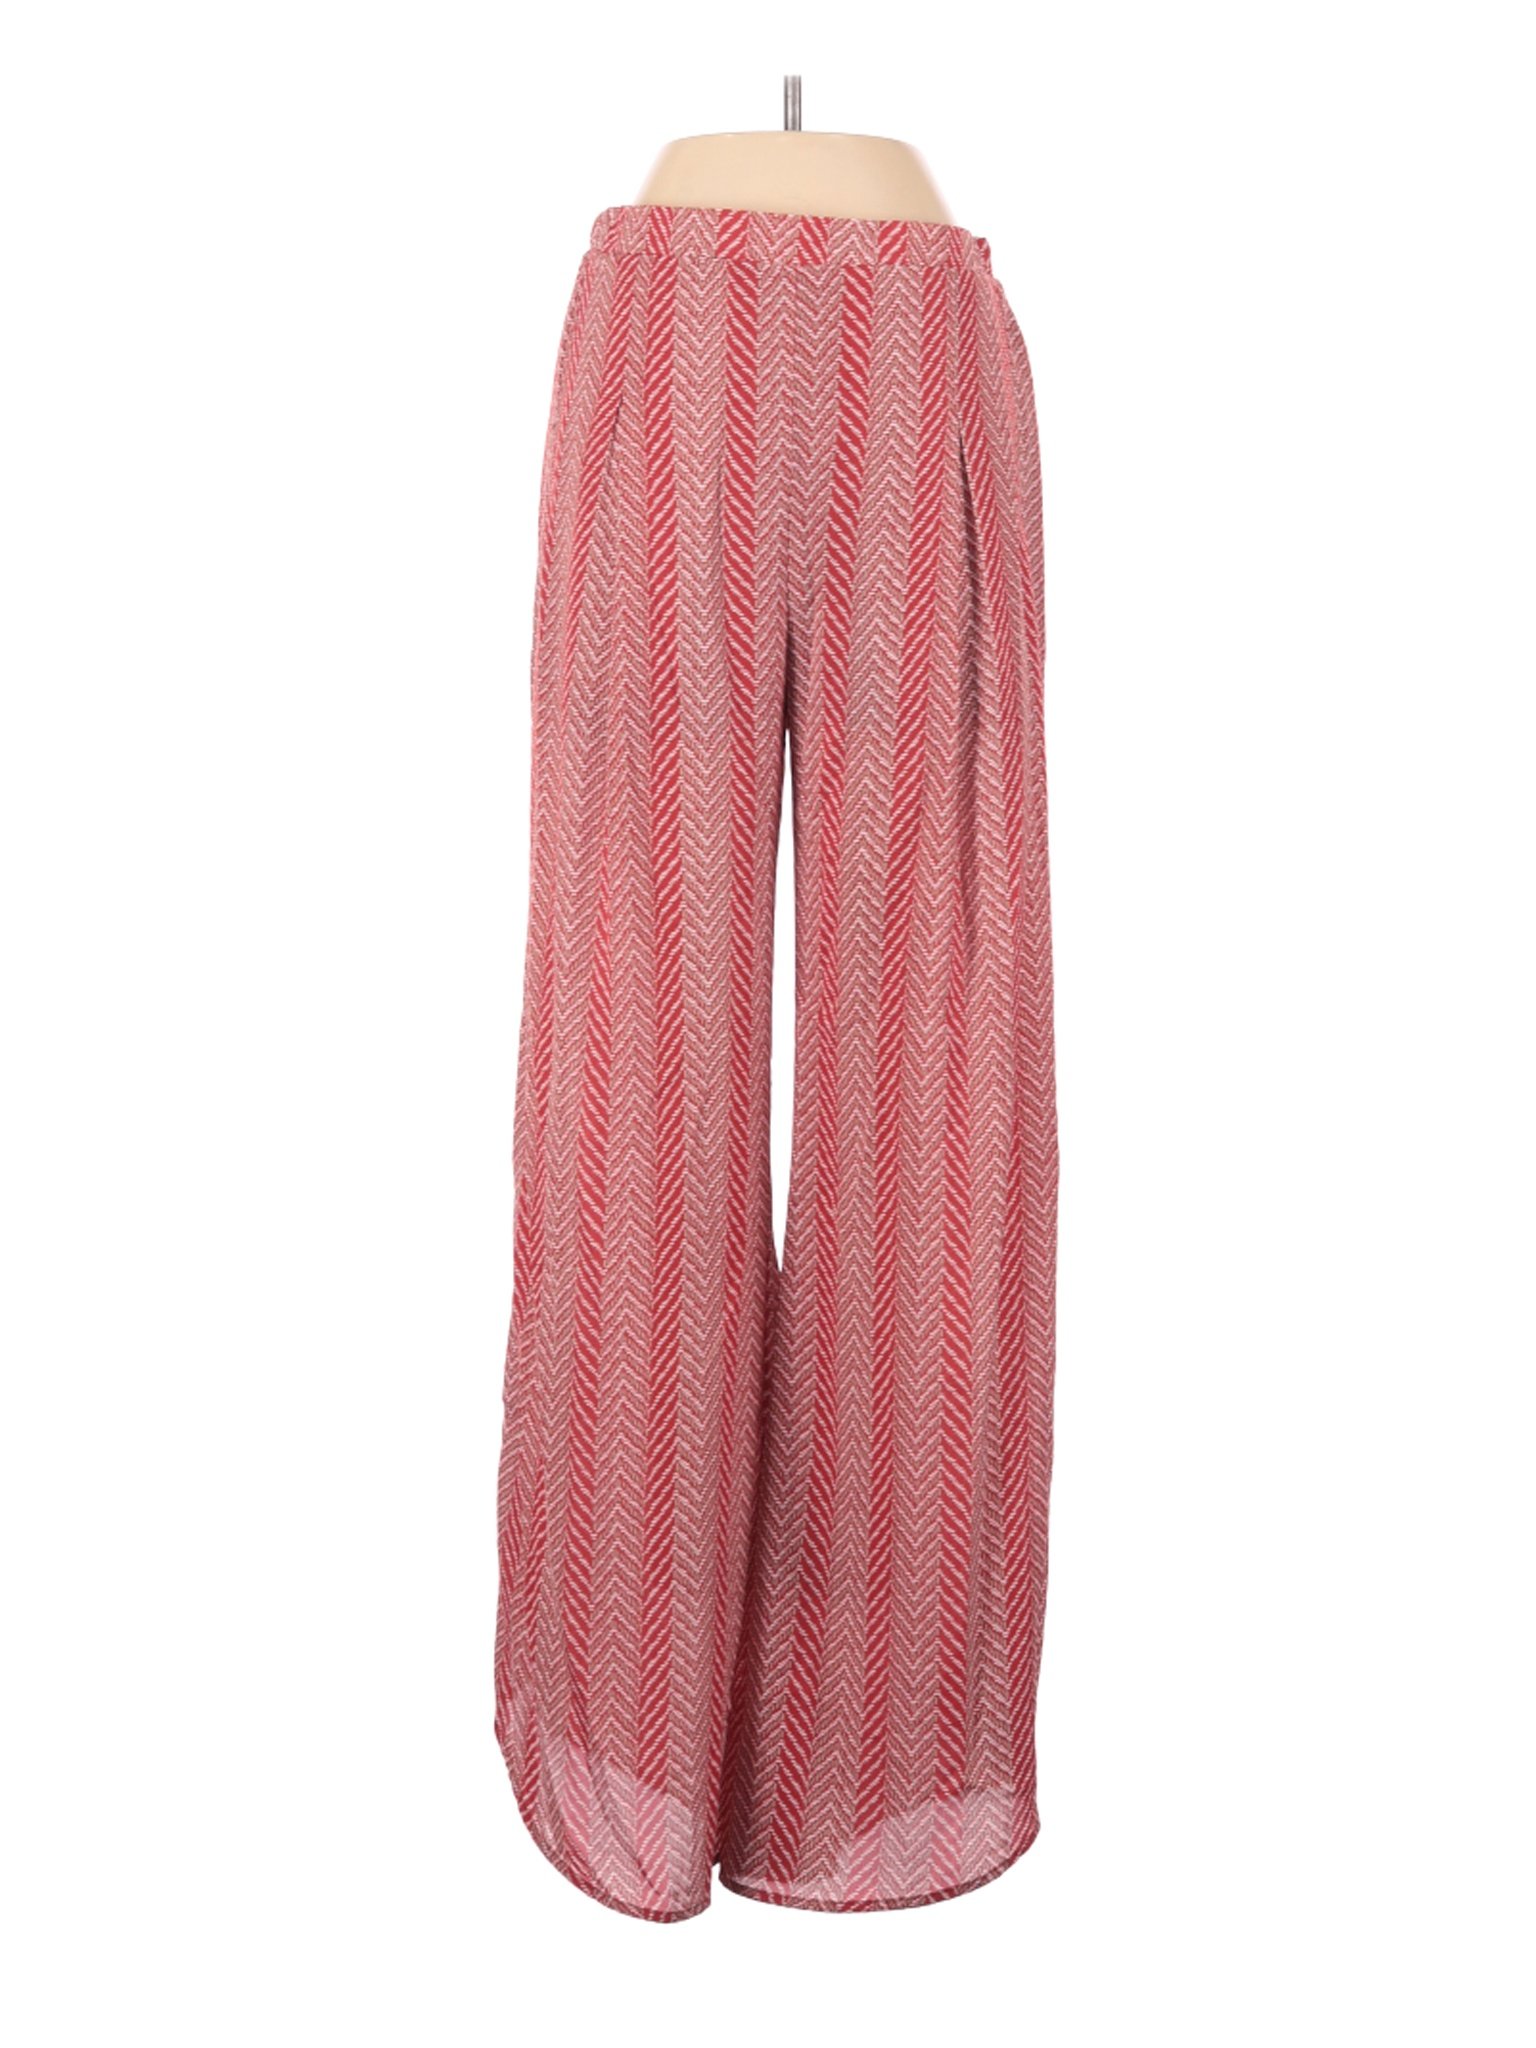 L Love Women Pink Casual Pants S | eBay